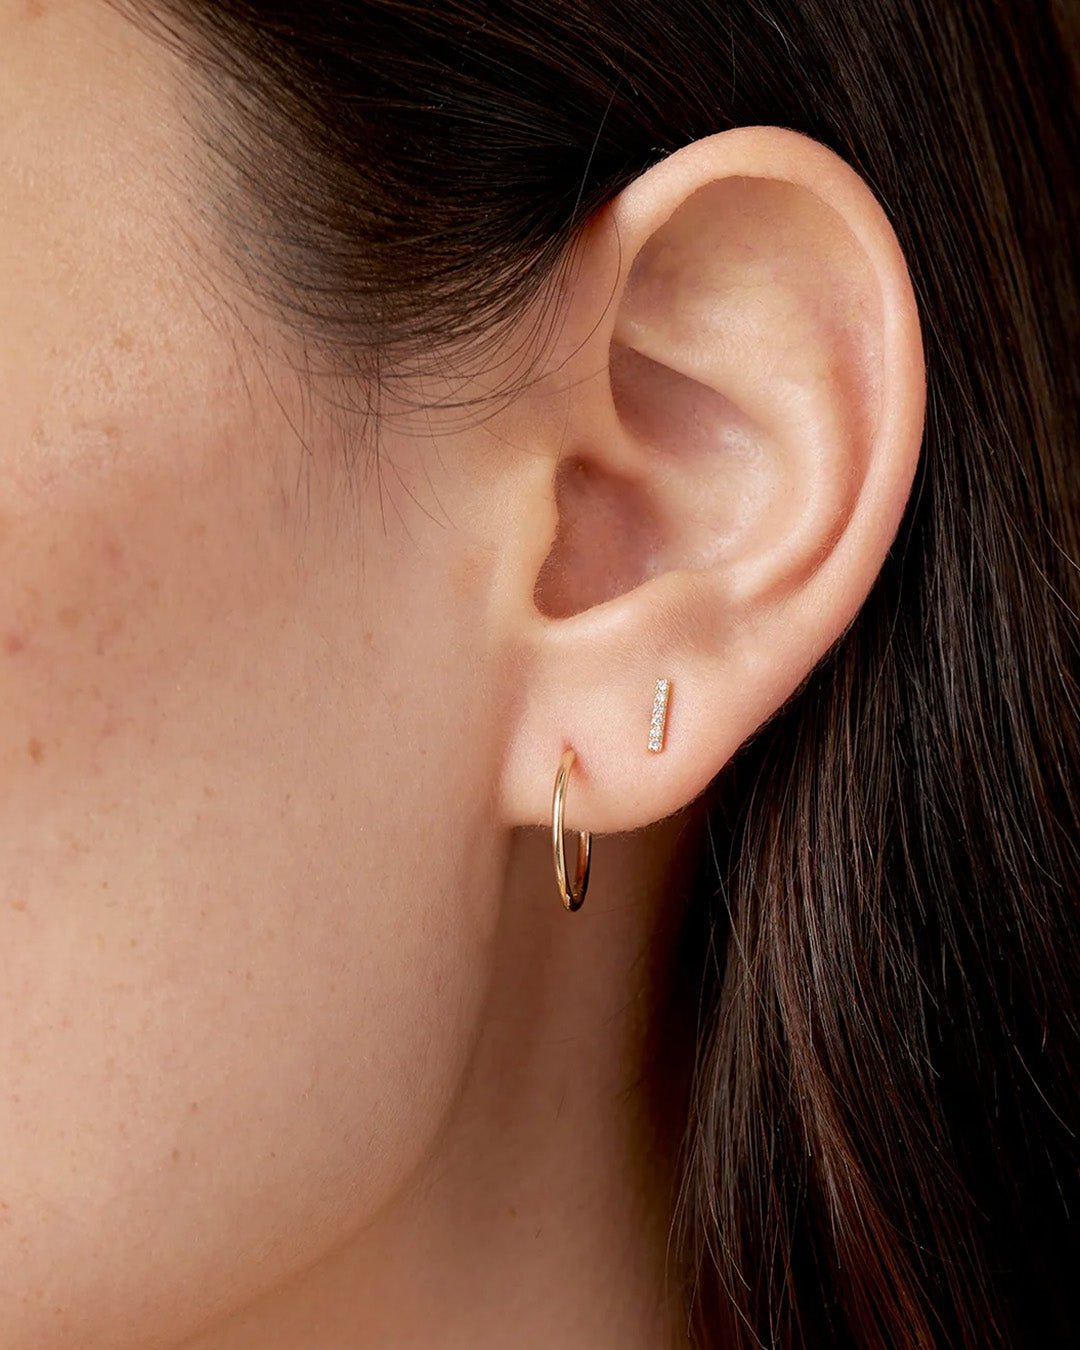 Classic Diamond Threaded Flat Back Stud Earring in 14K Solid Gold, Women's by Gorjana